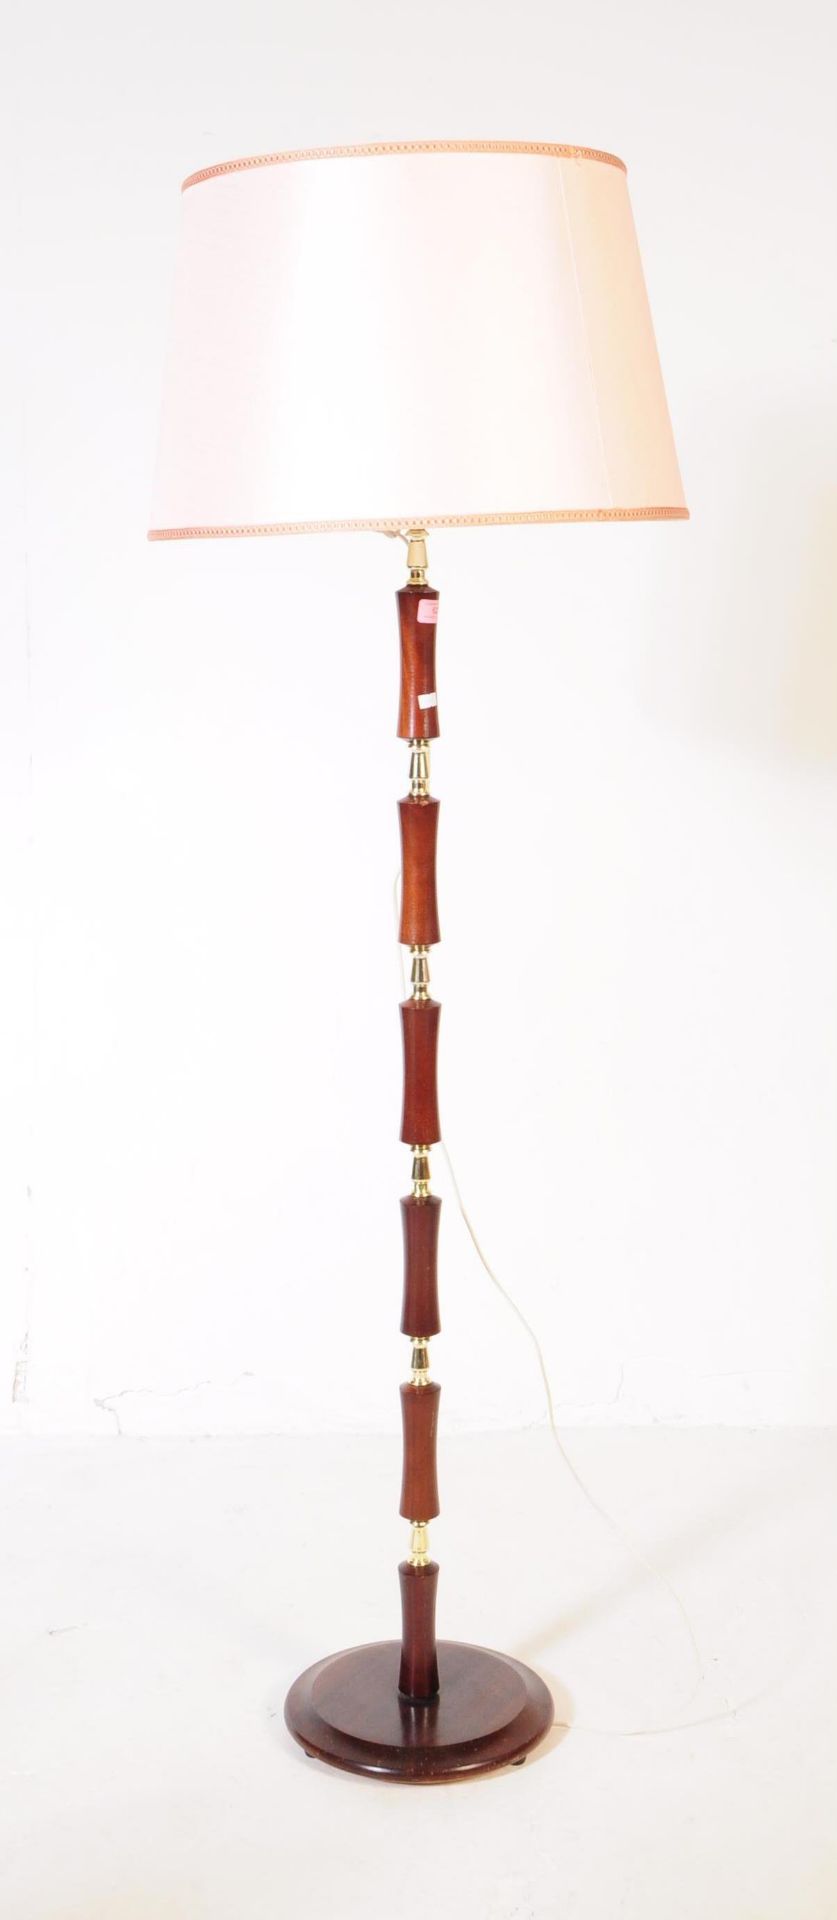 BRITISH MODERN DESIGN - MID CENTURY STANDARD LAMP